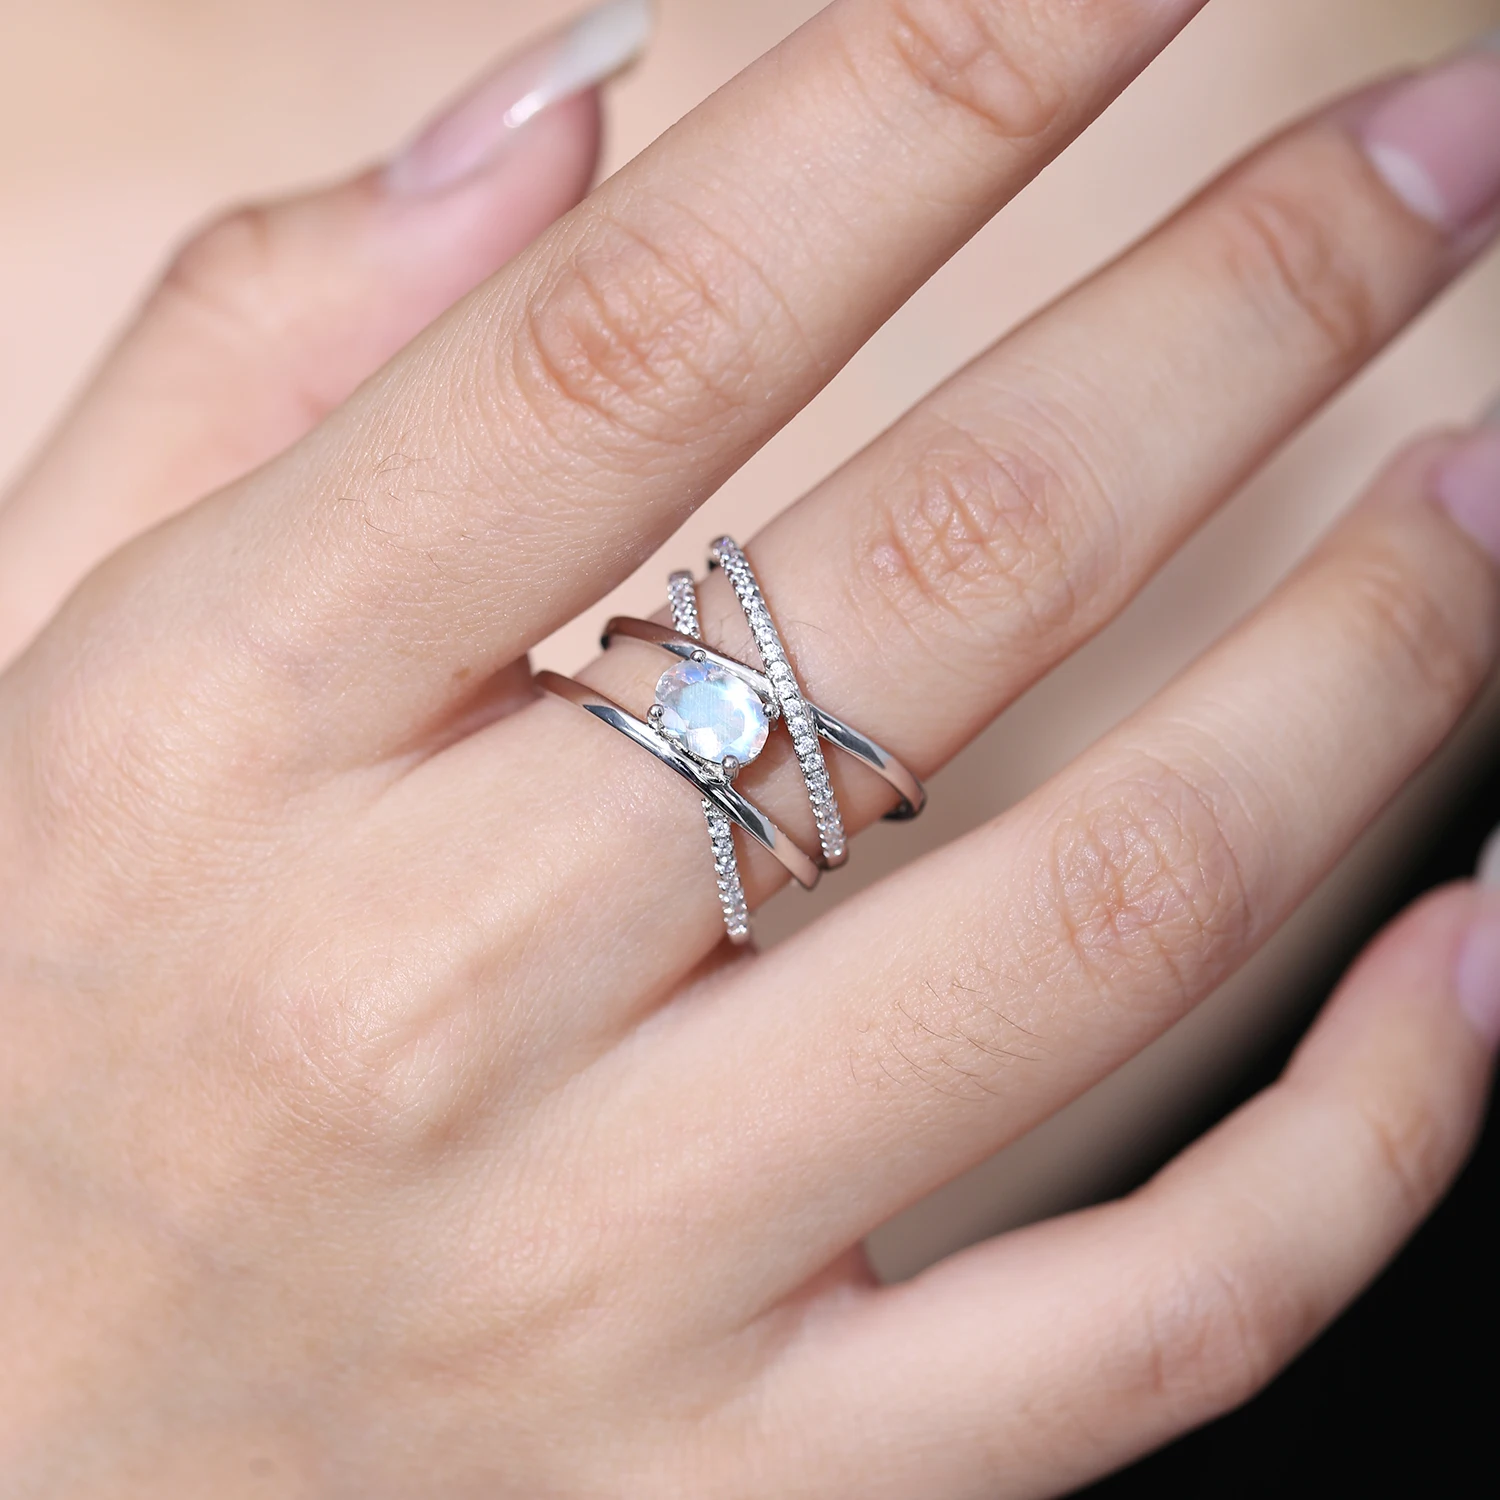 Clover-Inspired Two-Finger Ring